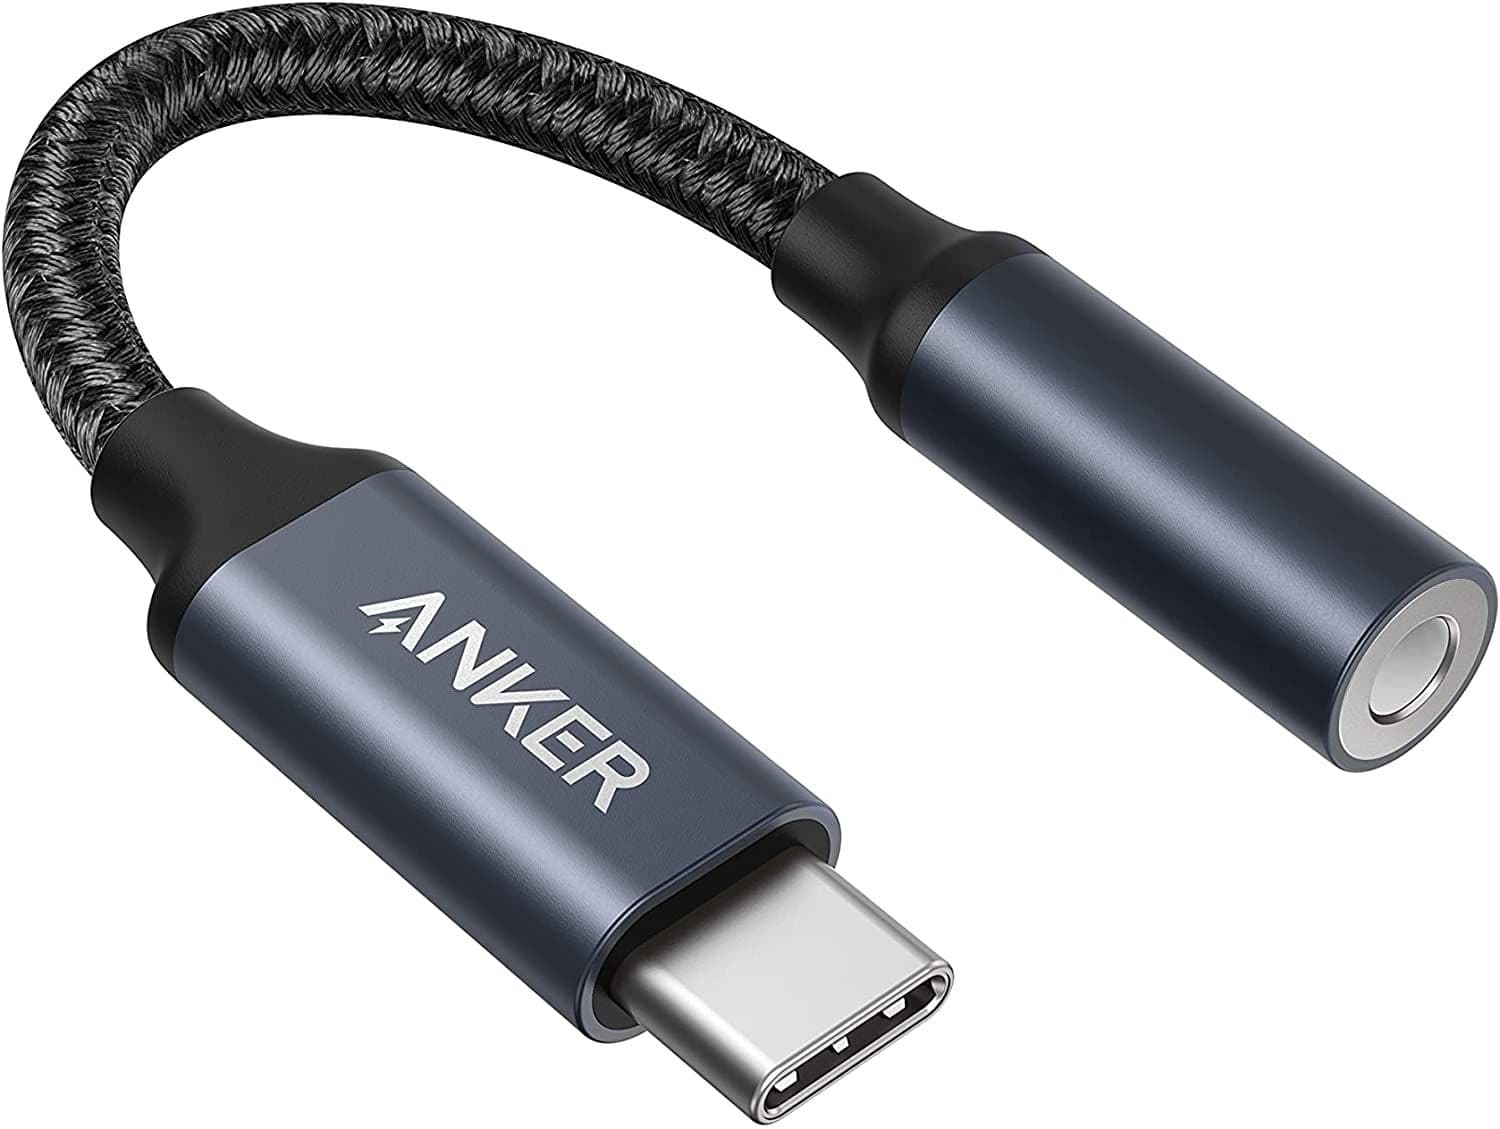 Anker USB-C ＆ 3.5 mm オーディオアダプタの特徴